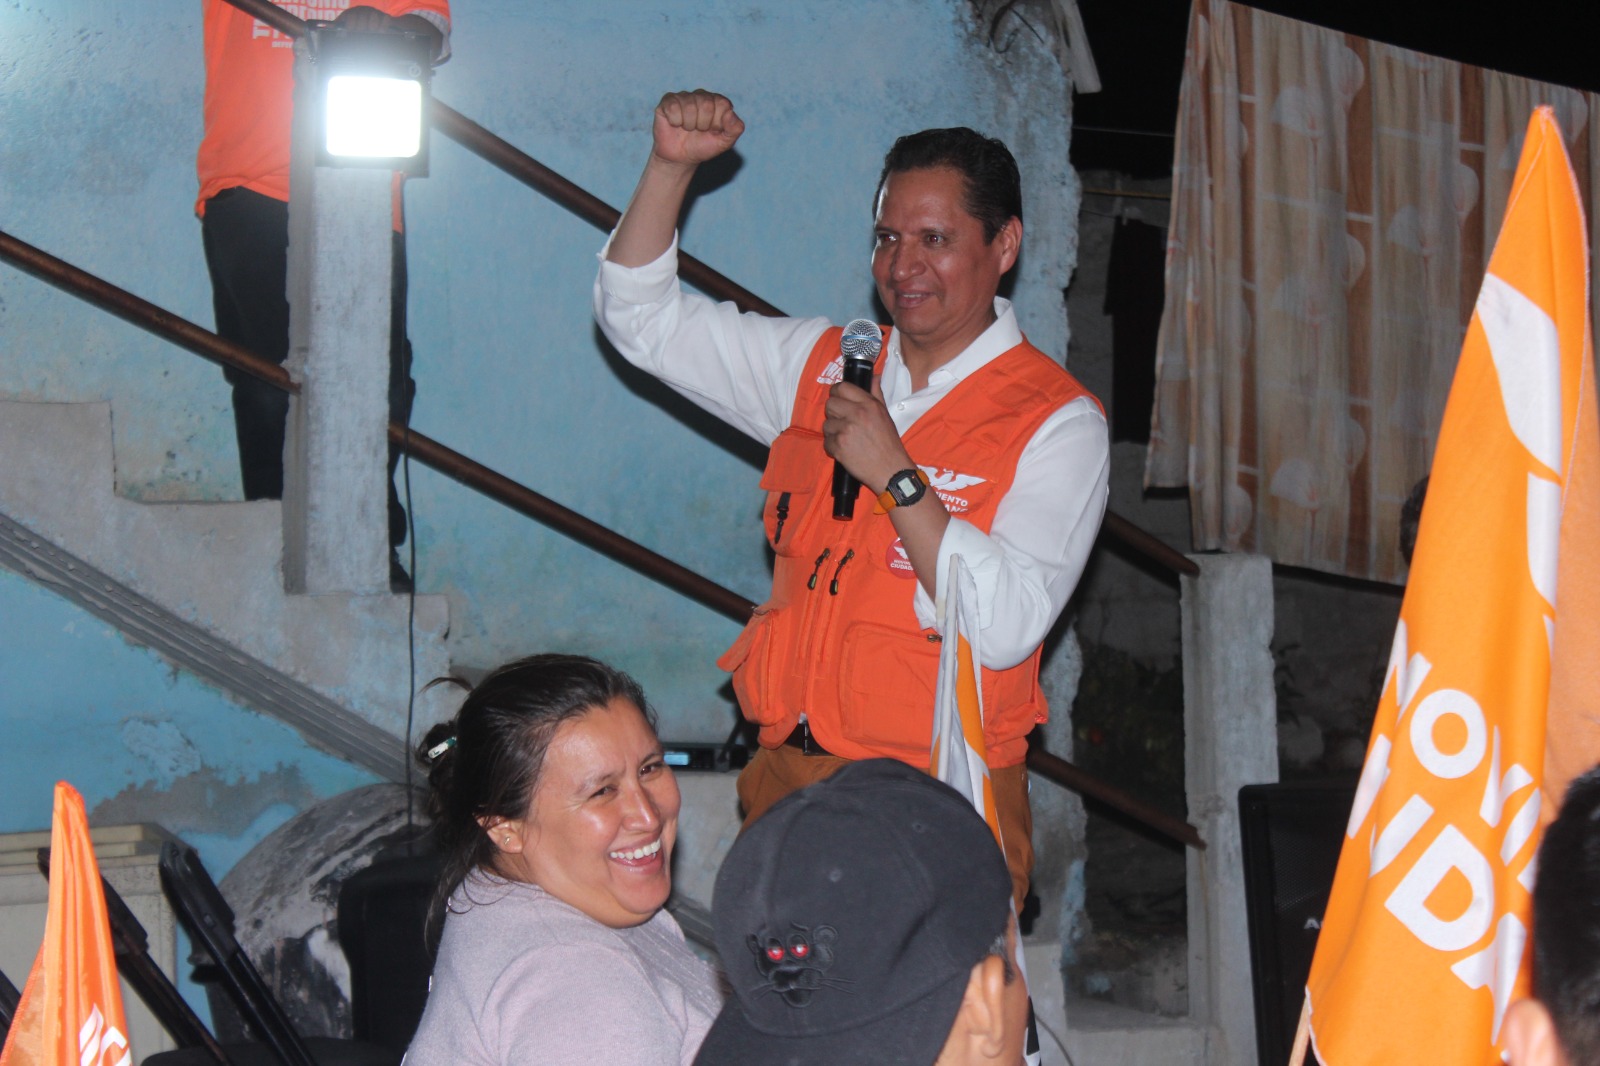 Crece proyecto de Luis Antonio Herrera rumbo a la alcaldía de Tlaxcala con el apoyo ciudadano